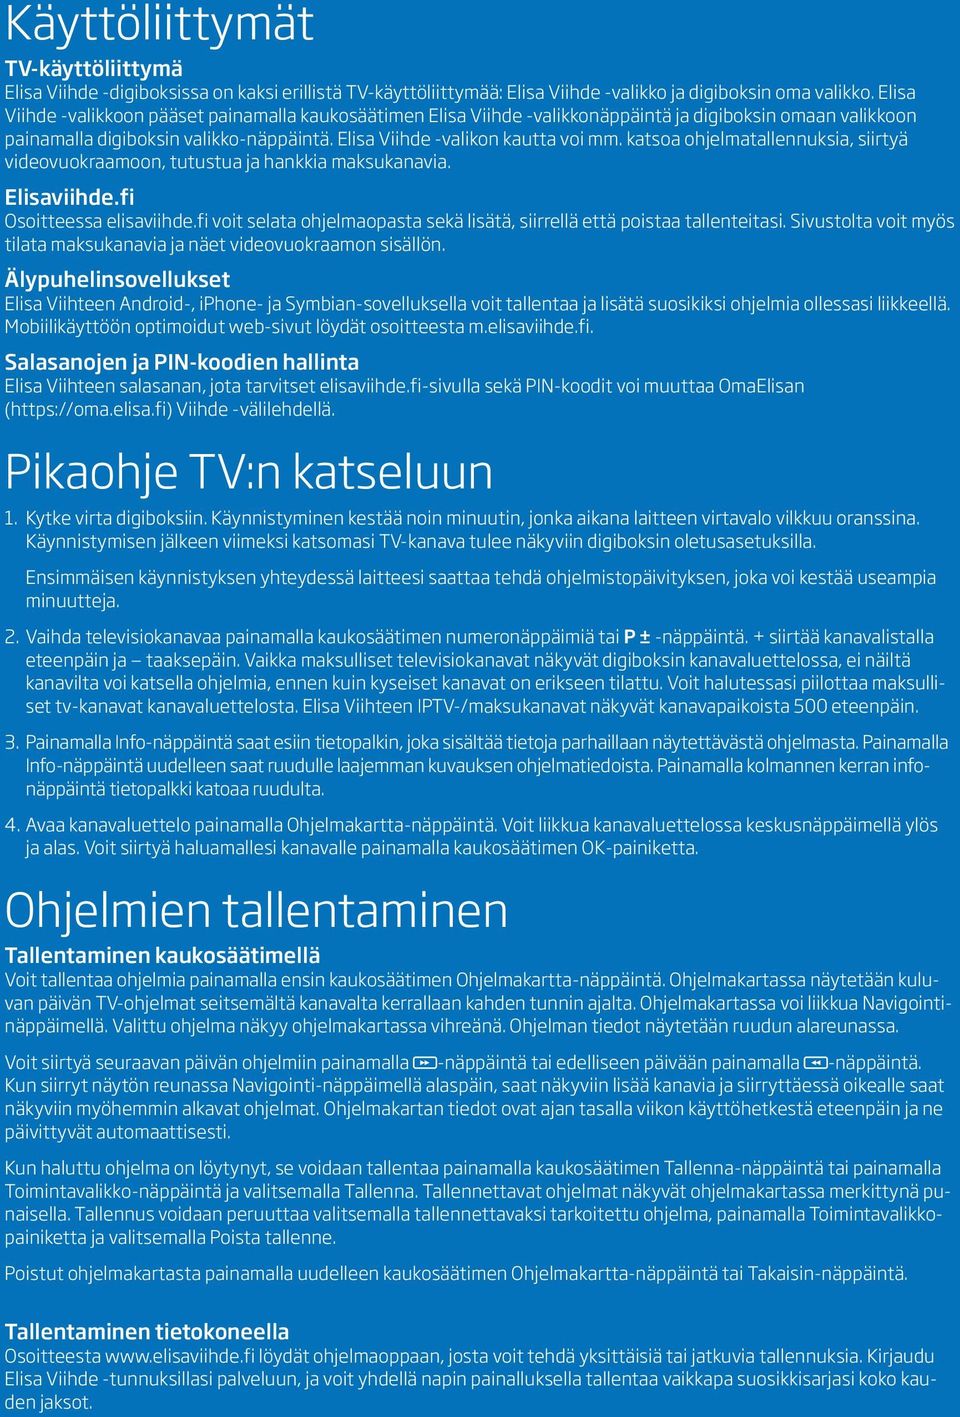 katsoa ohjelmatallennuksia, siirtyä videovuokraamoon, tutustua ja hankkia maksukanavia. Elisaviihde.fi Osoitteessa elisaviihde.